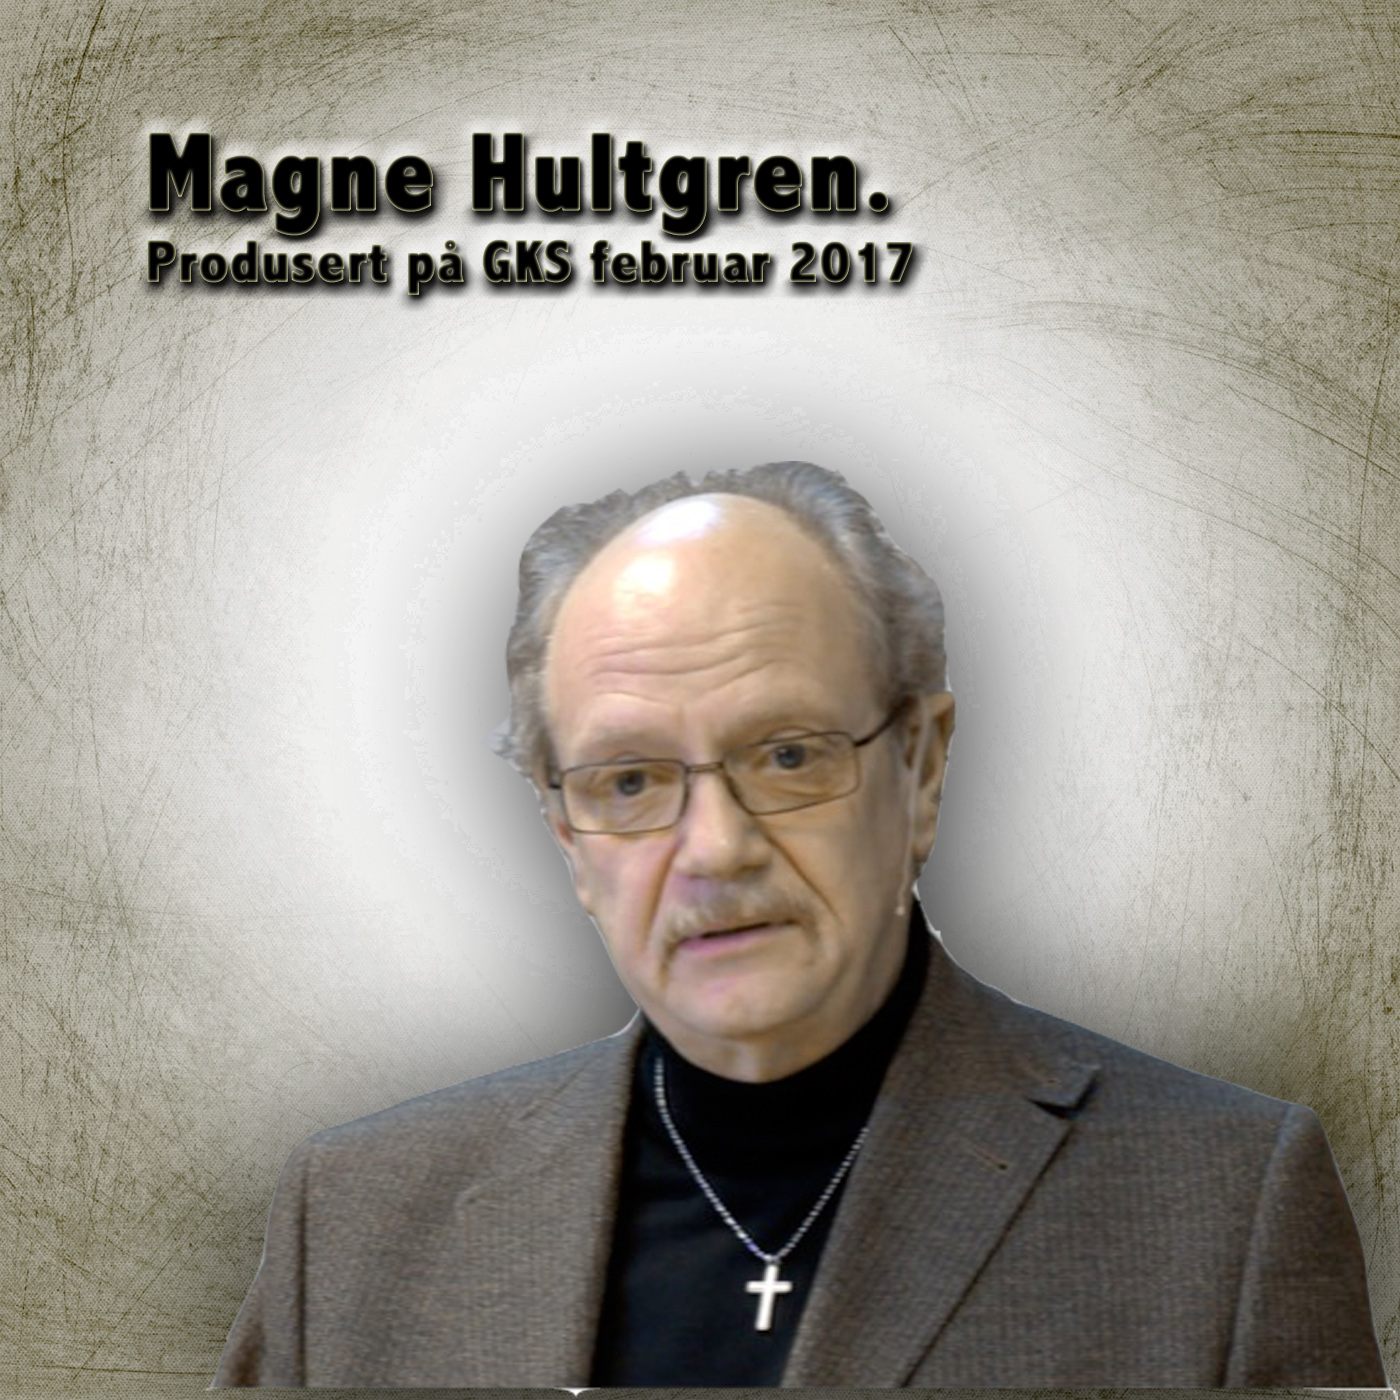 Pastor Magne Hultgren